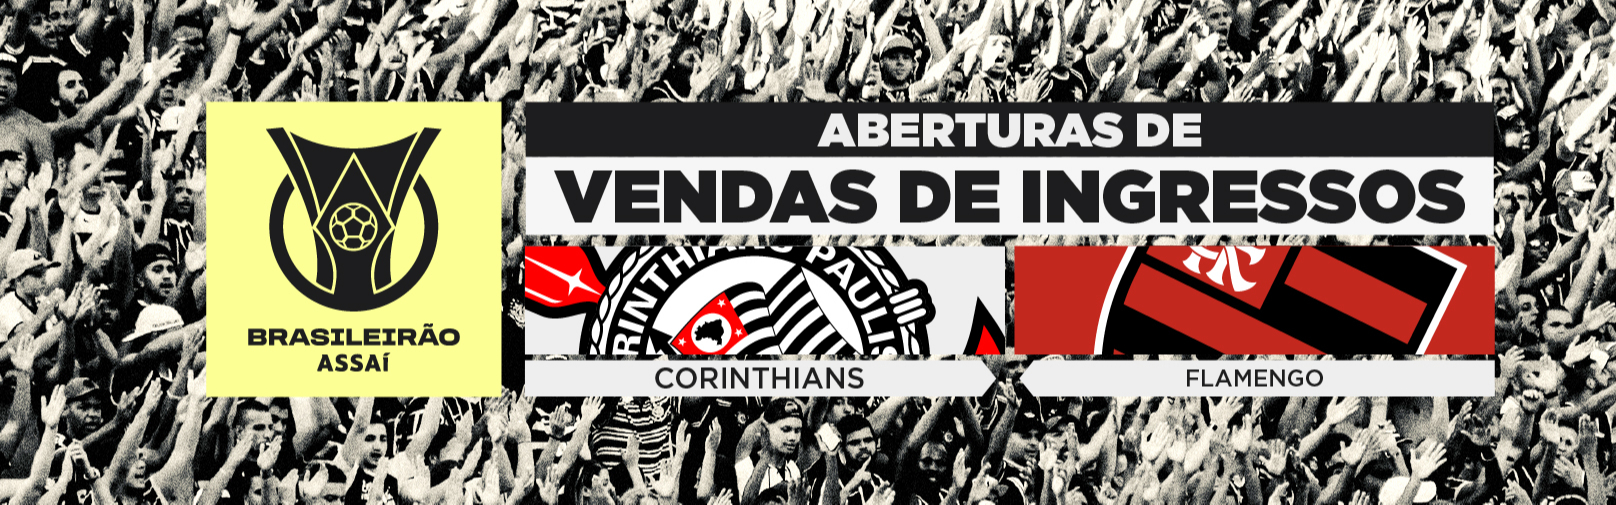 Brasileirão – Vendas de ingressos: Corinthians x Flamengo (10/7) - Neo Química Arena